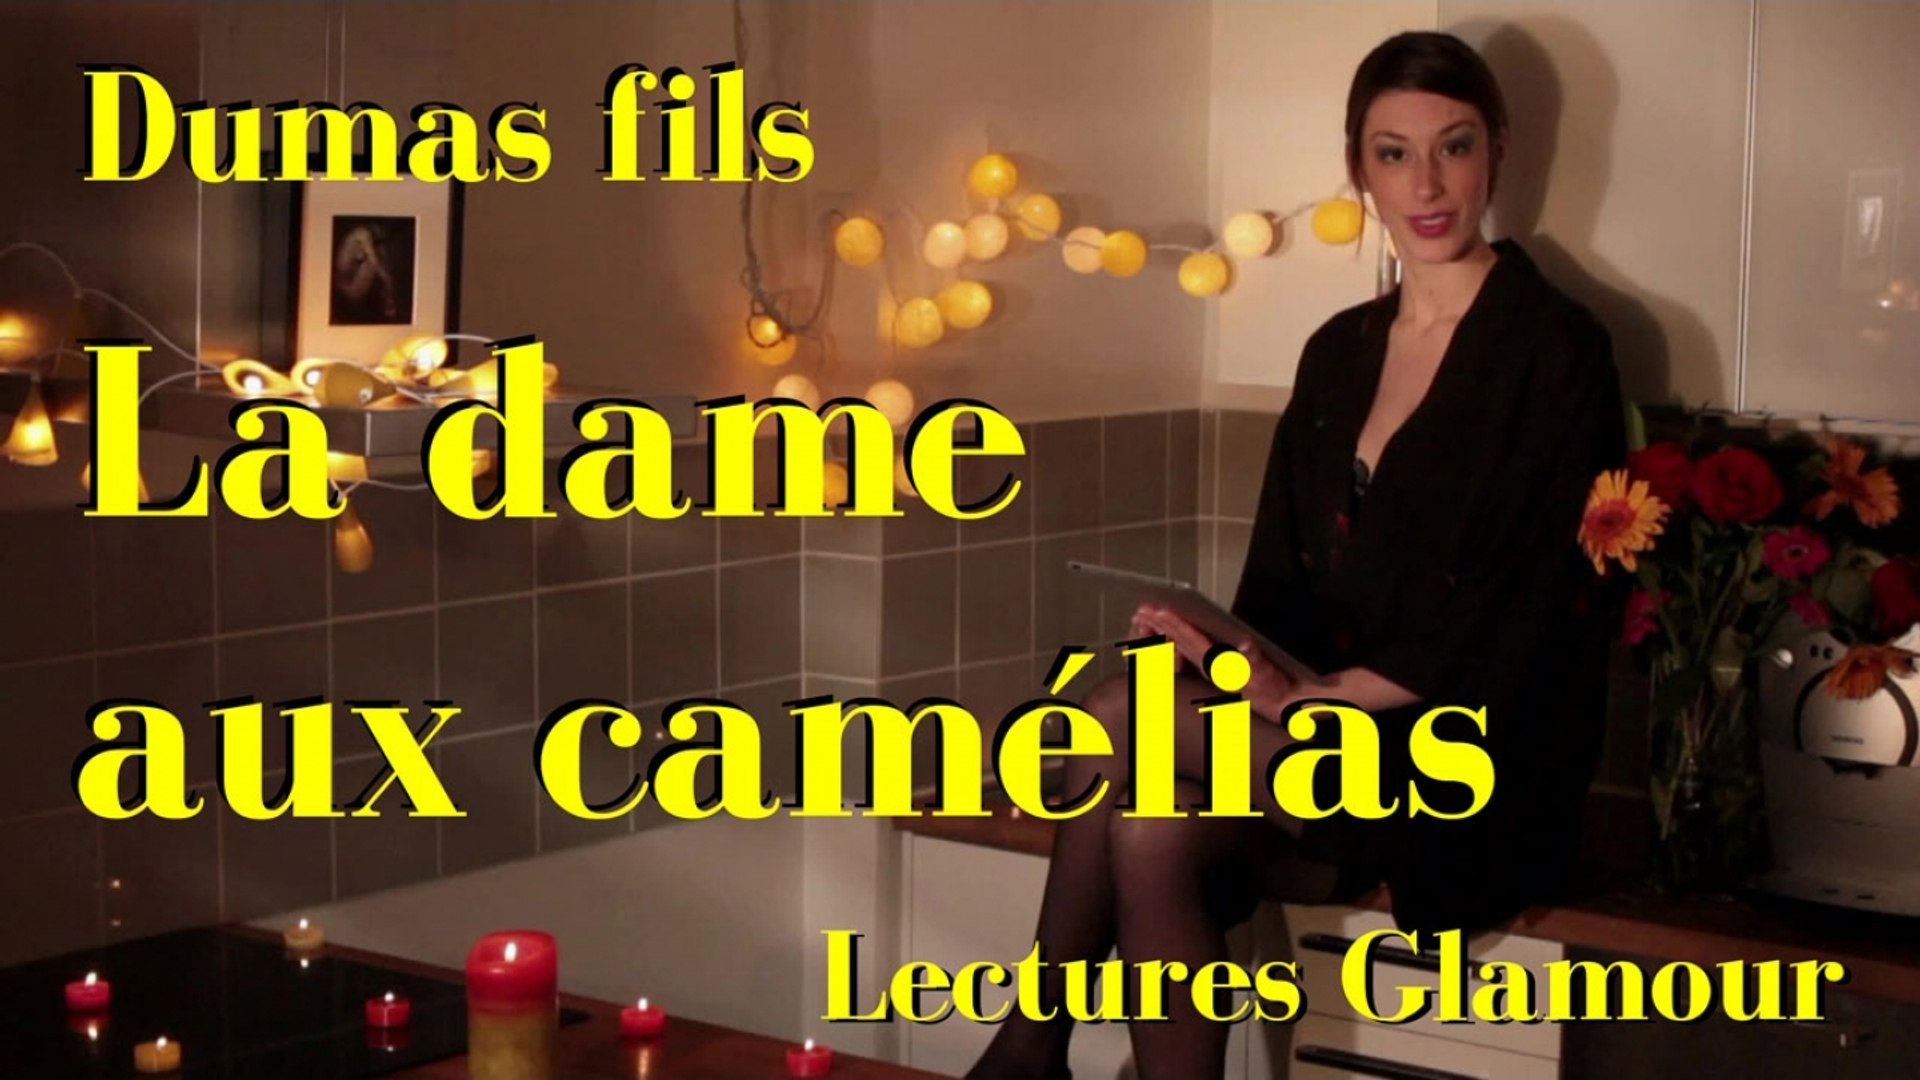 Lectures Glamour - Alexandre Dumas fils - La dame aux camélias - Vidéo  Dailymotion